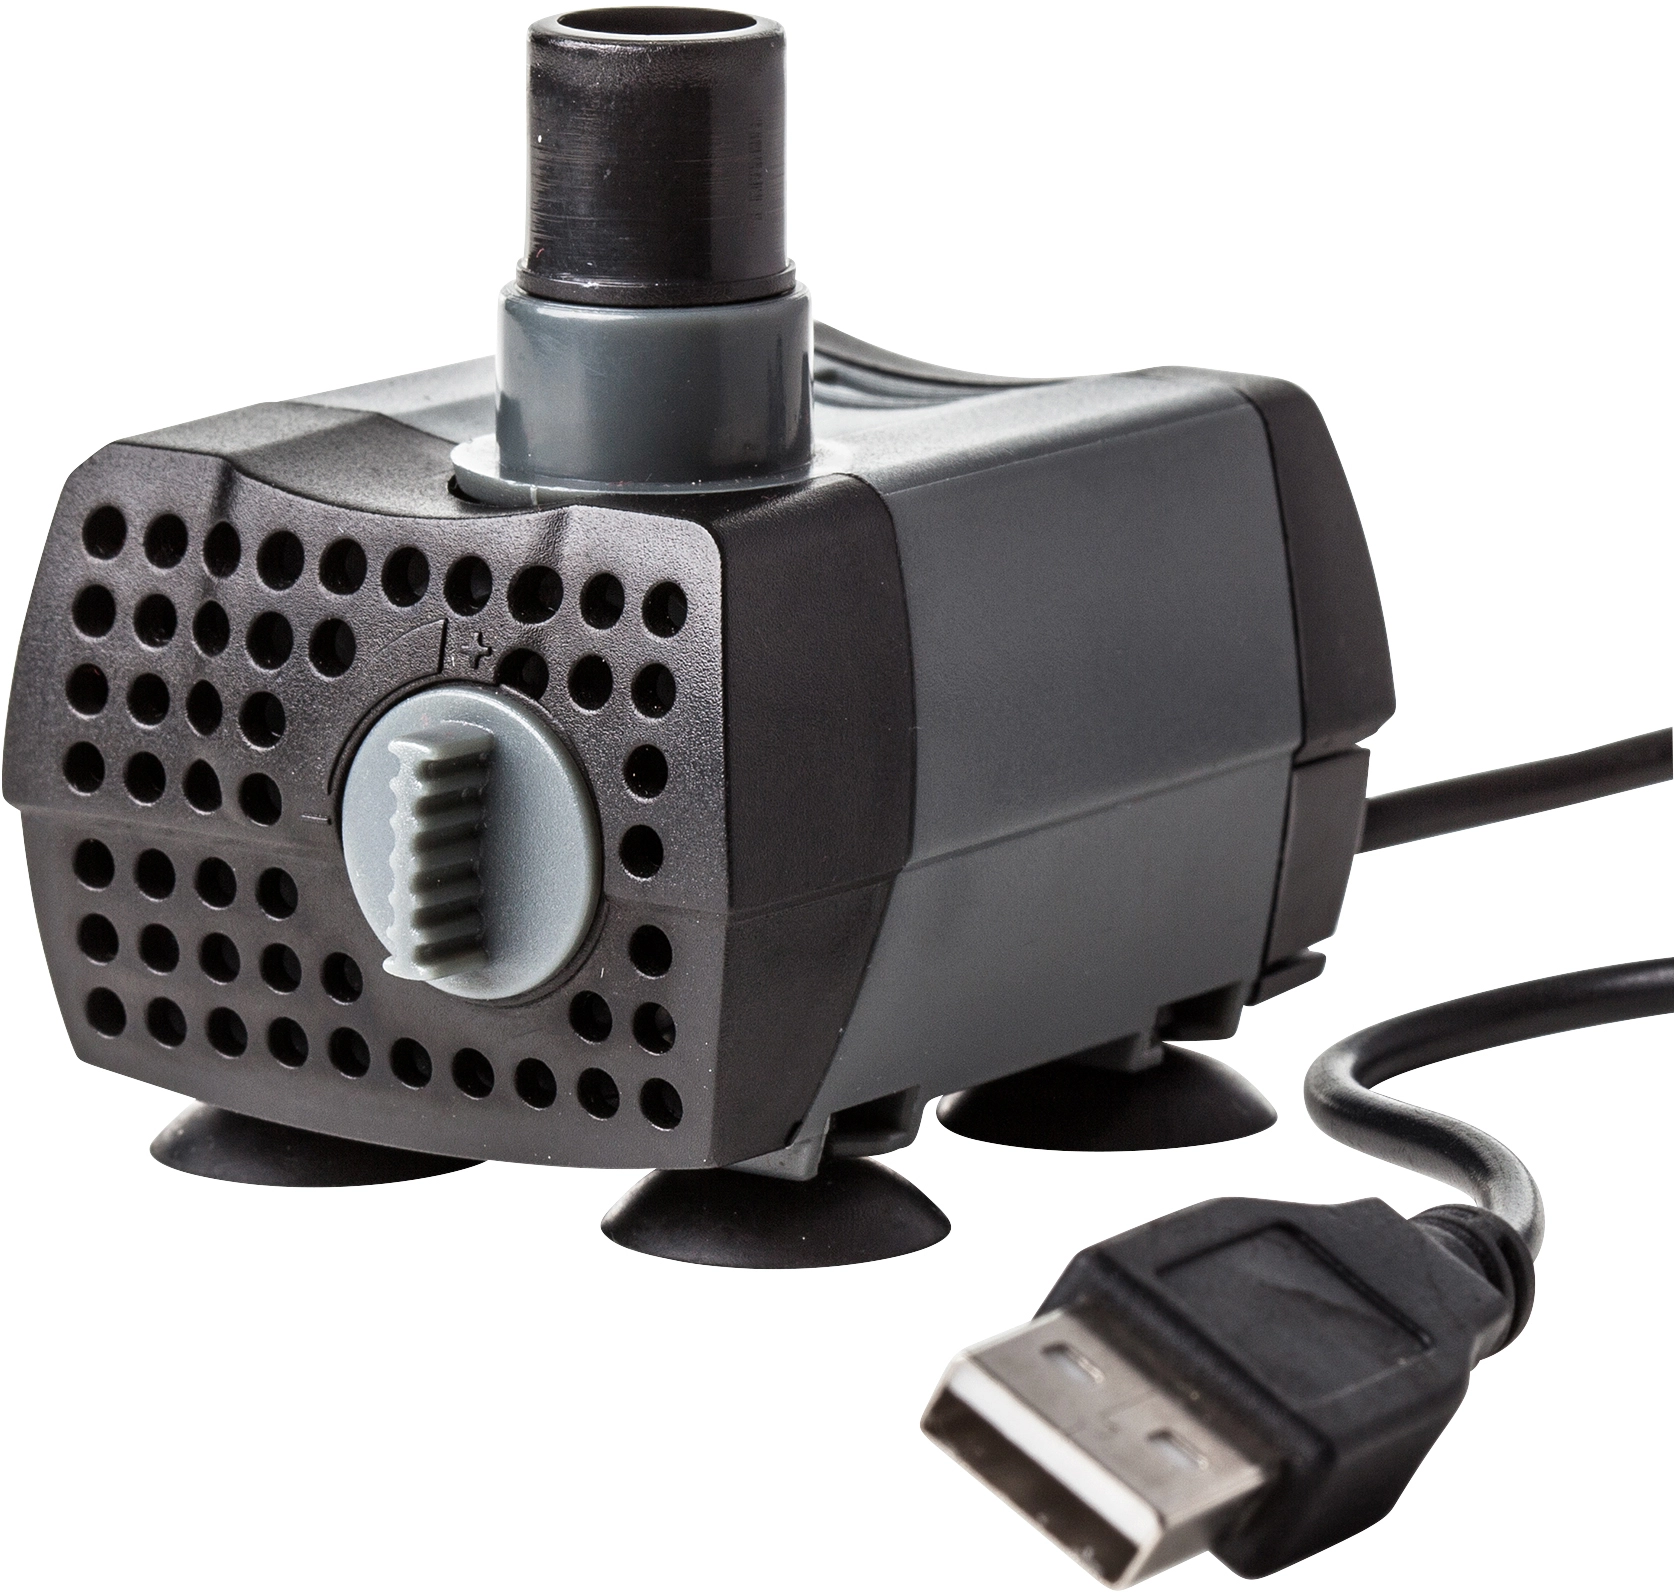 Heissner Indoor Mini-Pumpe mit USB-Anschluss 280 l/h kaufen bei OBI